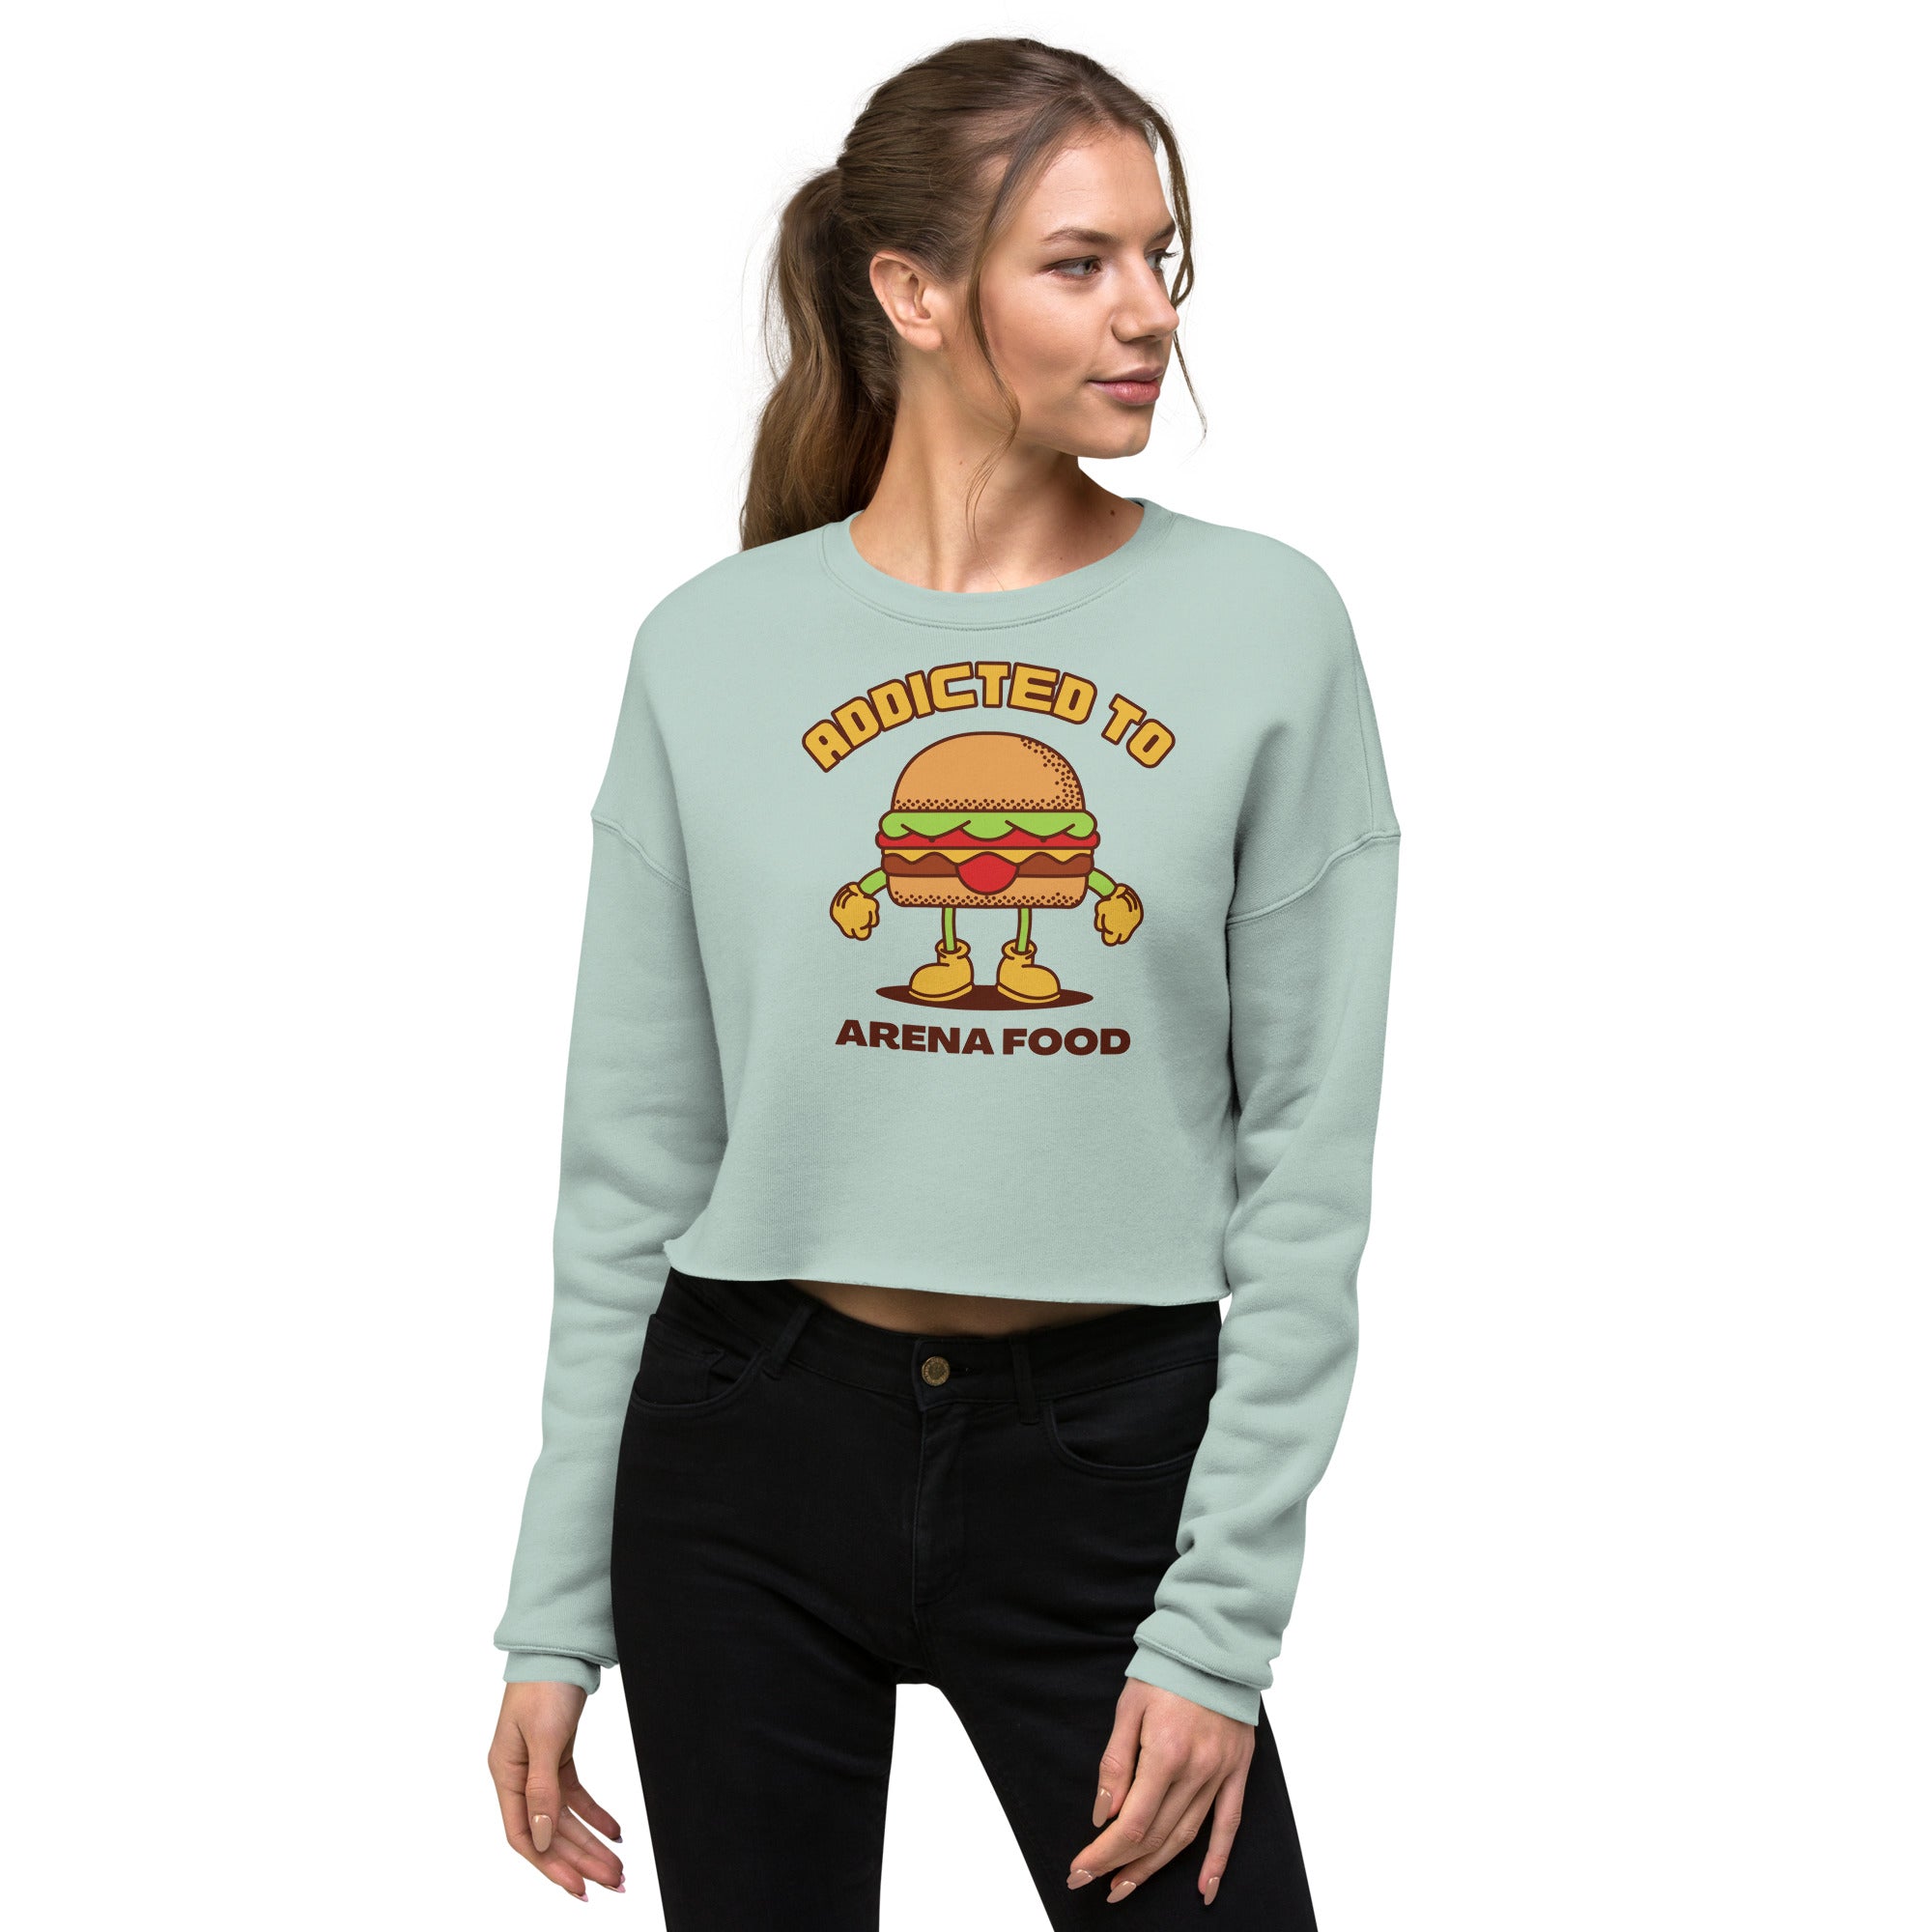 Addicted To Arena Food Women's Crop Sweatshirt